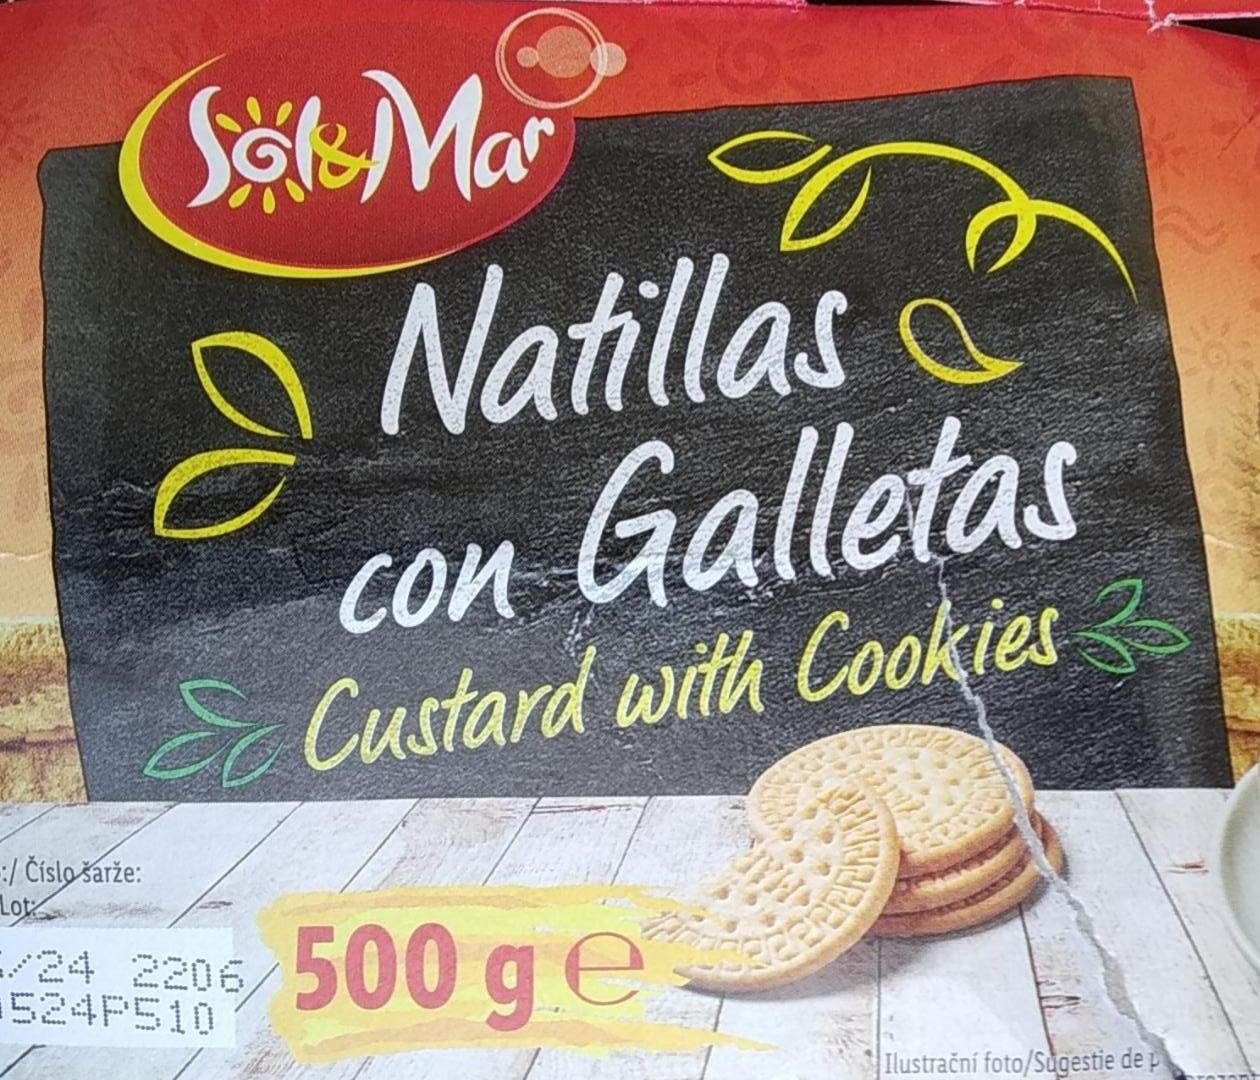 Fotografie - Natillas con galletas custard with cookies Sol&Mar